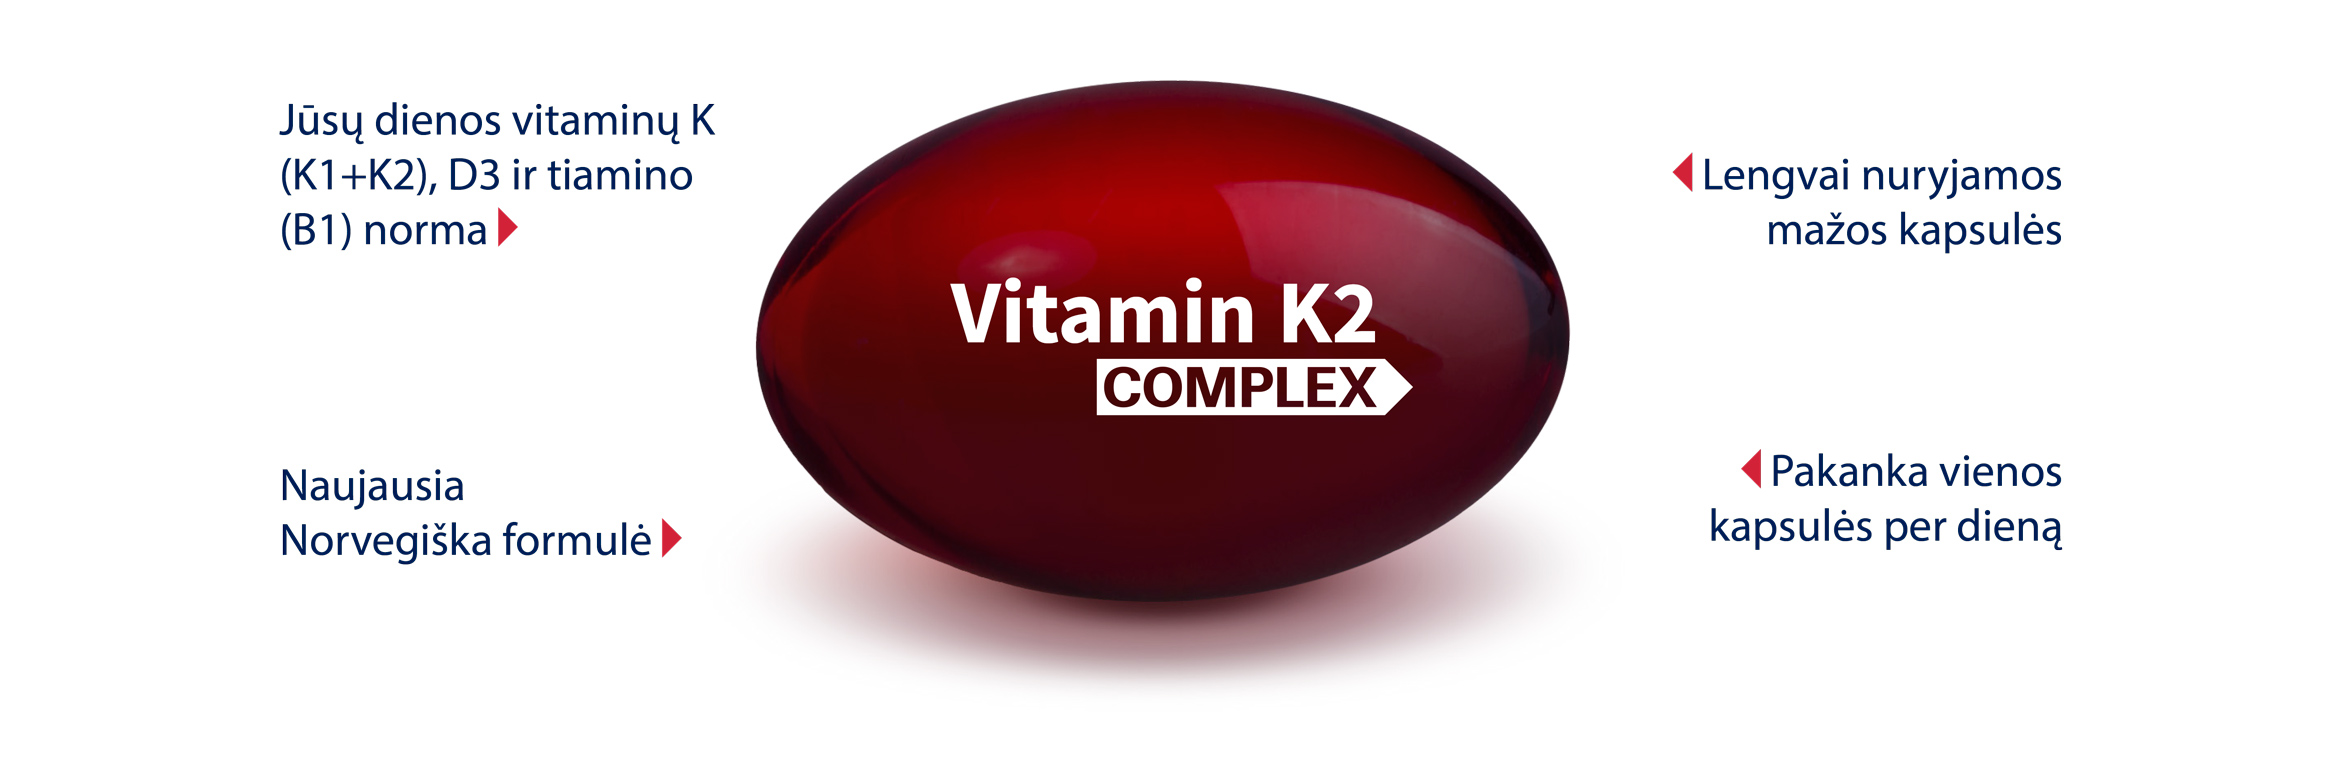 Vitamin K2 Complex